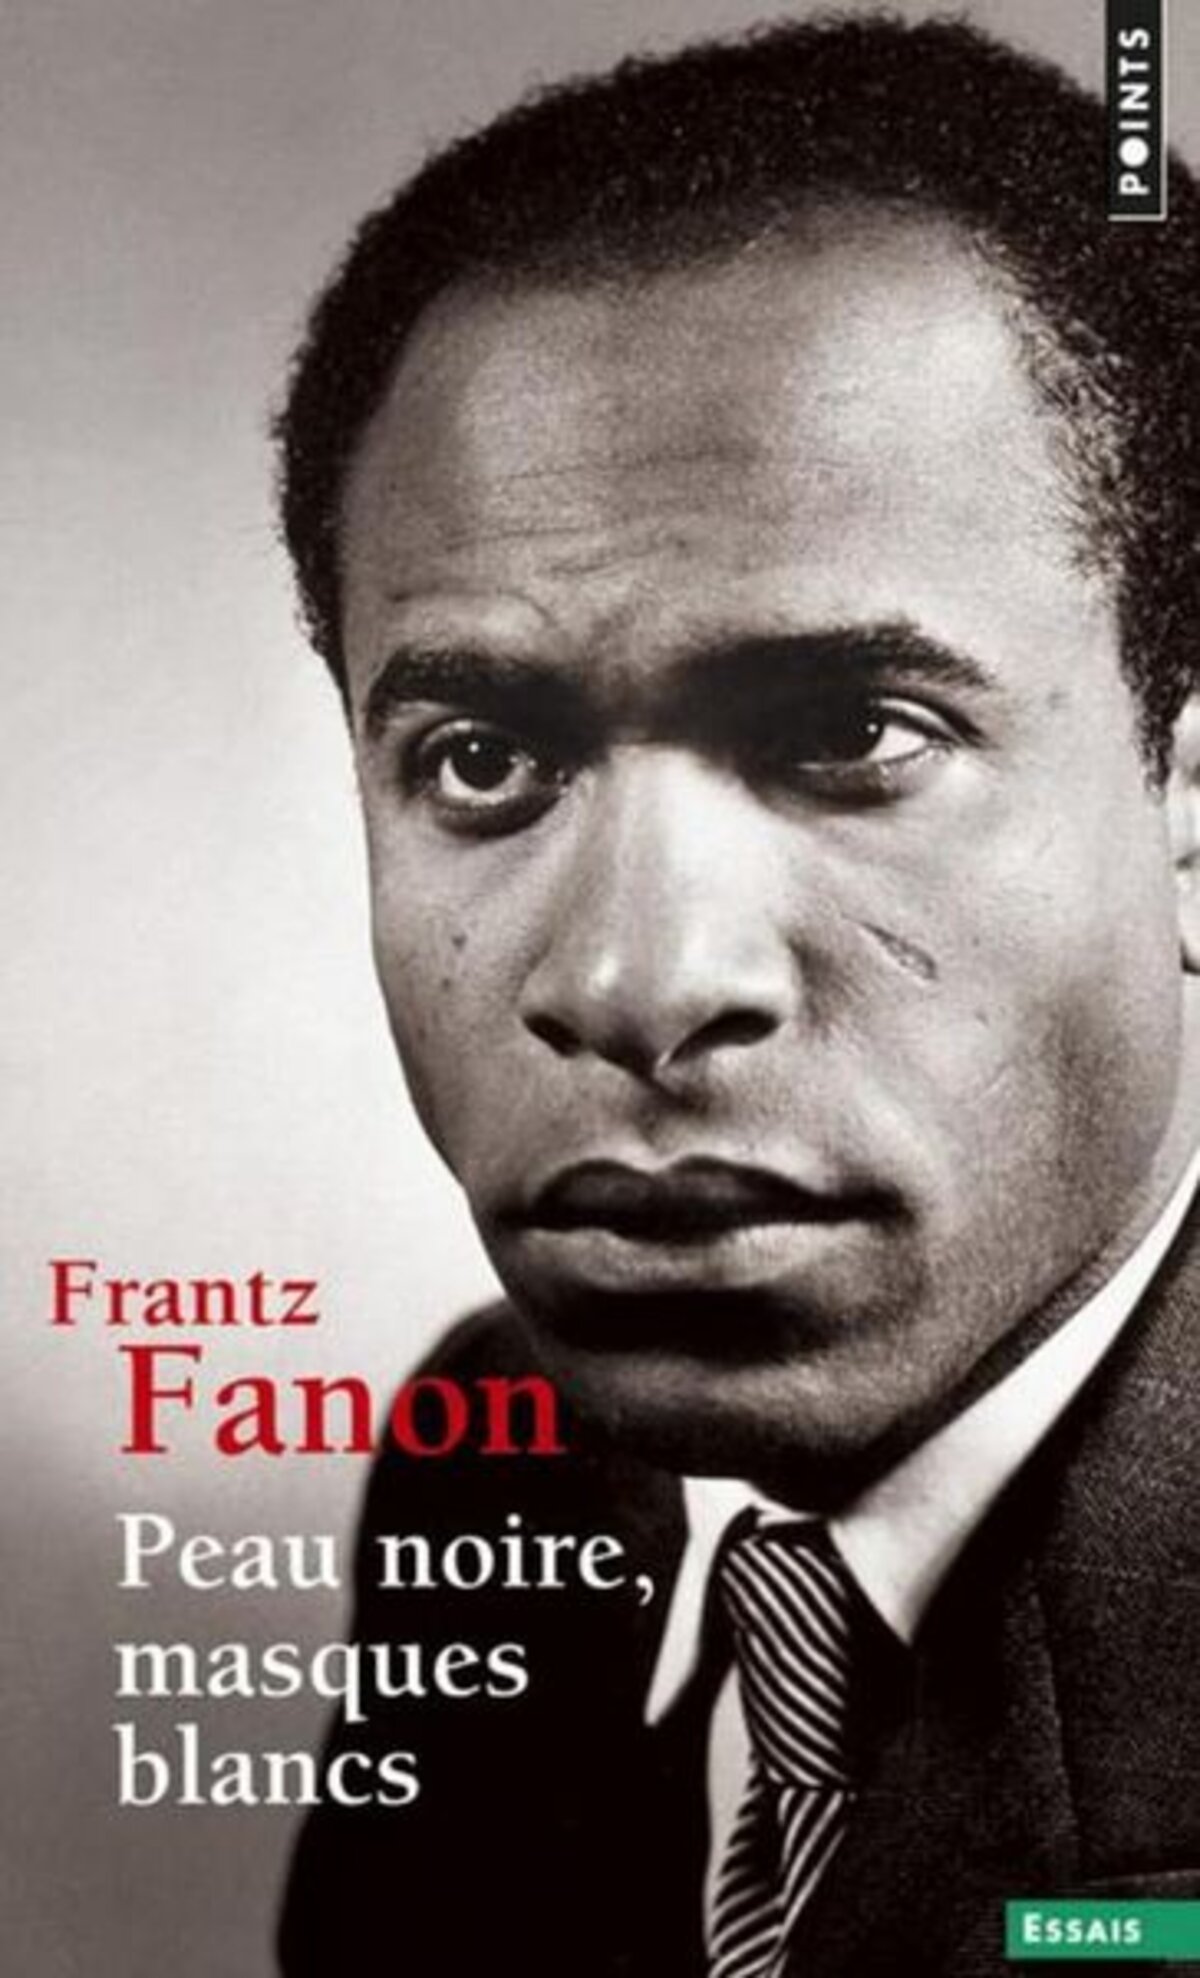 Frantz Fanon : face au racisme, l'universalisme radical